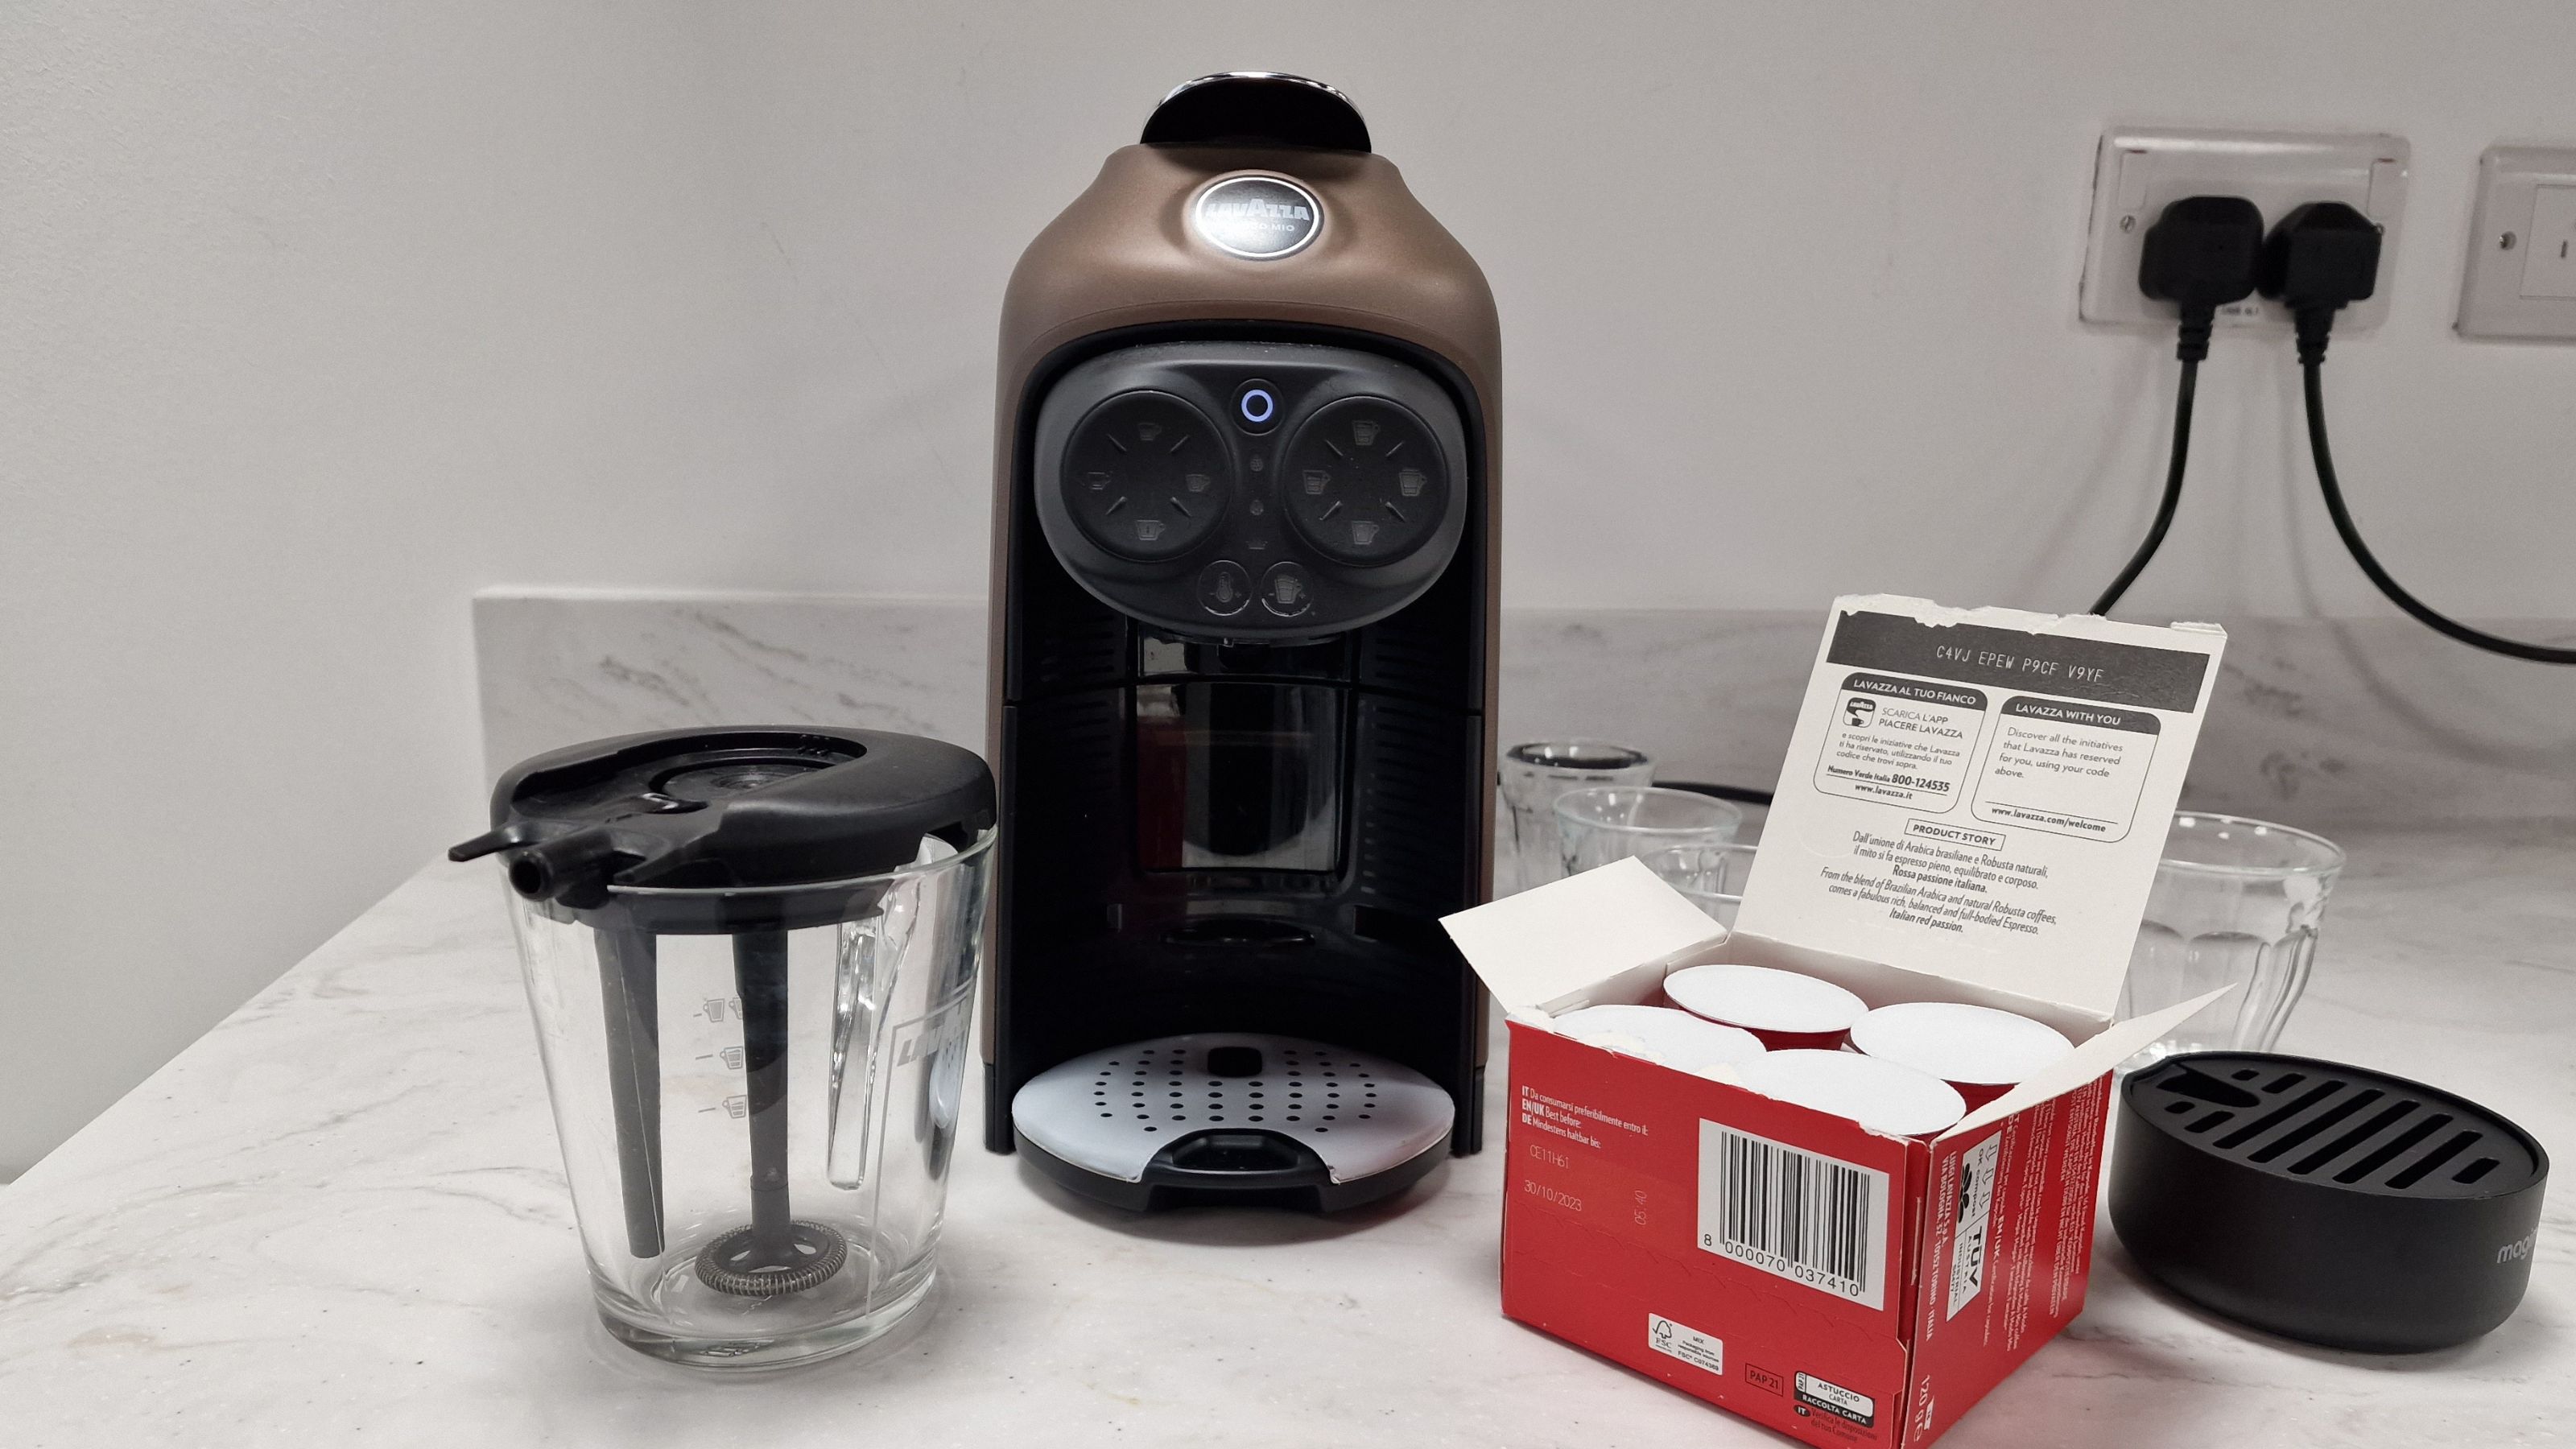 Lavazza Coffee Machine review: The Lavazza A Modo Mio Deśea Coffee